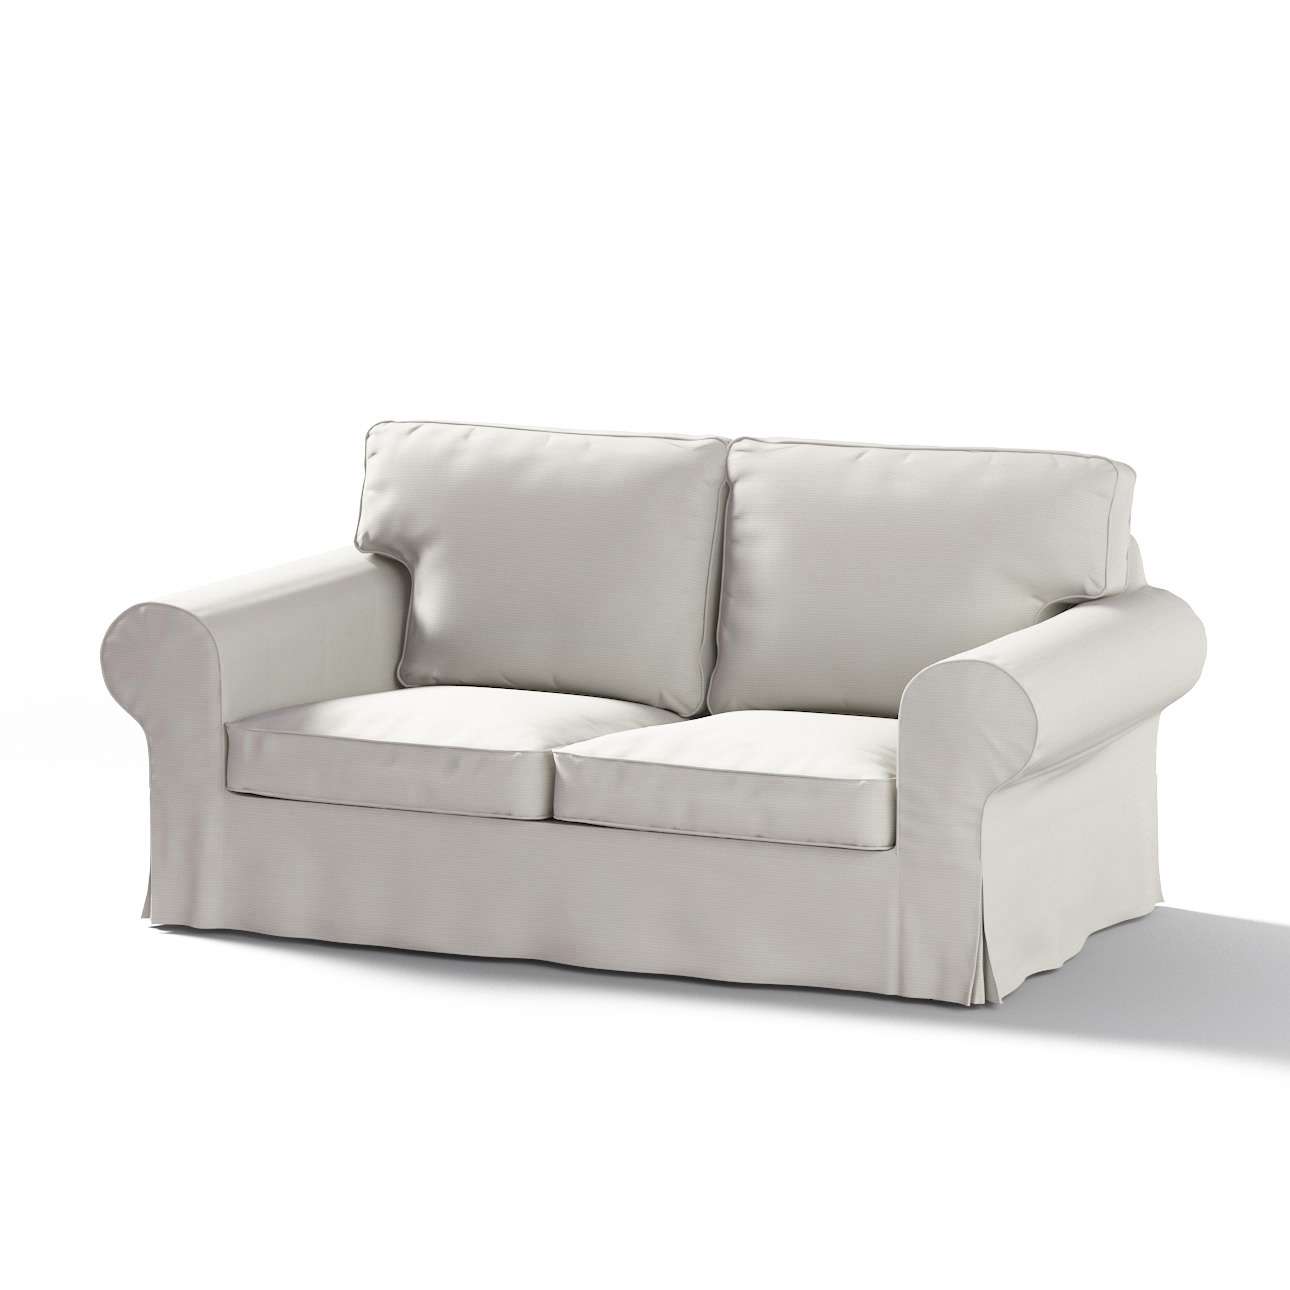 Dekoria Pokrowiec na sofę Ektorp 2-osobową rozkładaną model po 2012 Silver(jasnoszary) 200 x 90 x 73 cm Cotton Panama 1016-702-31